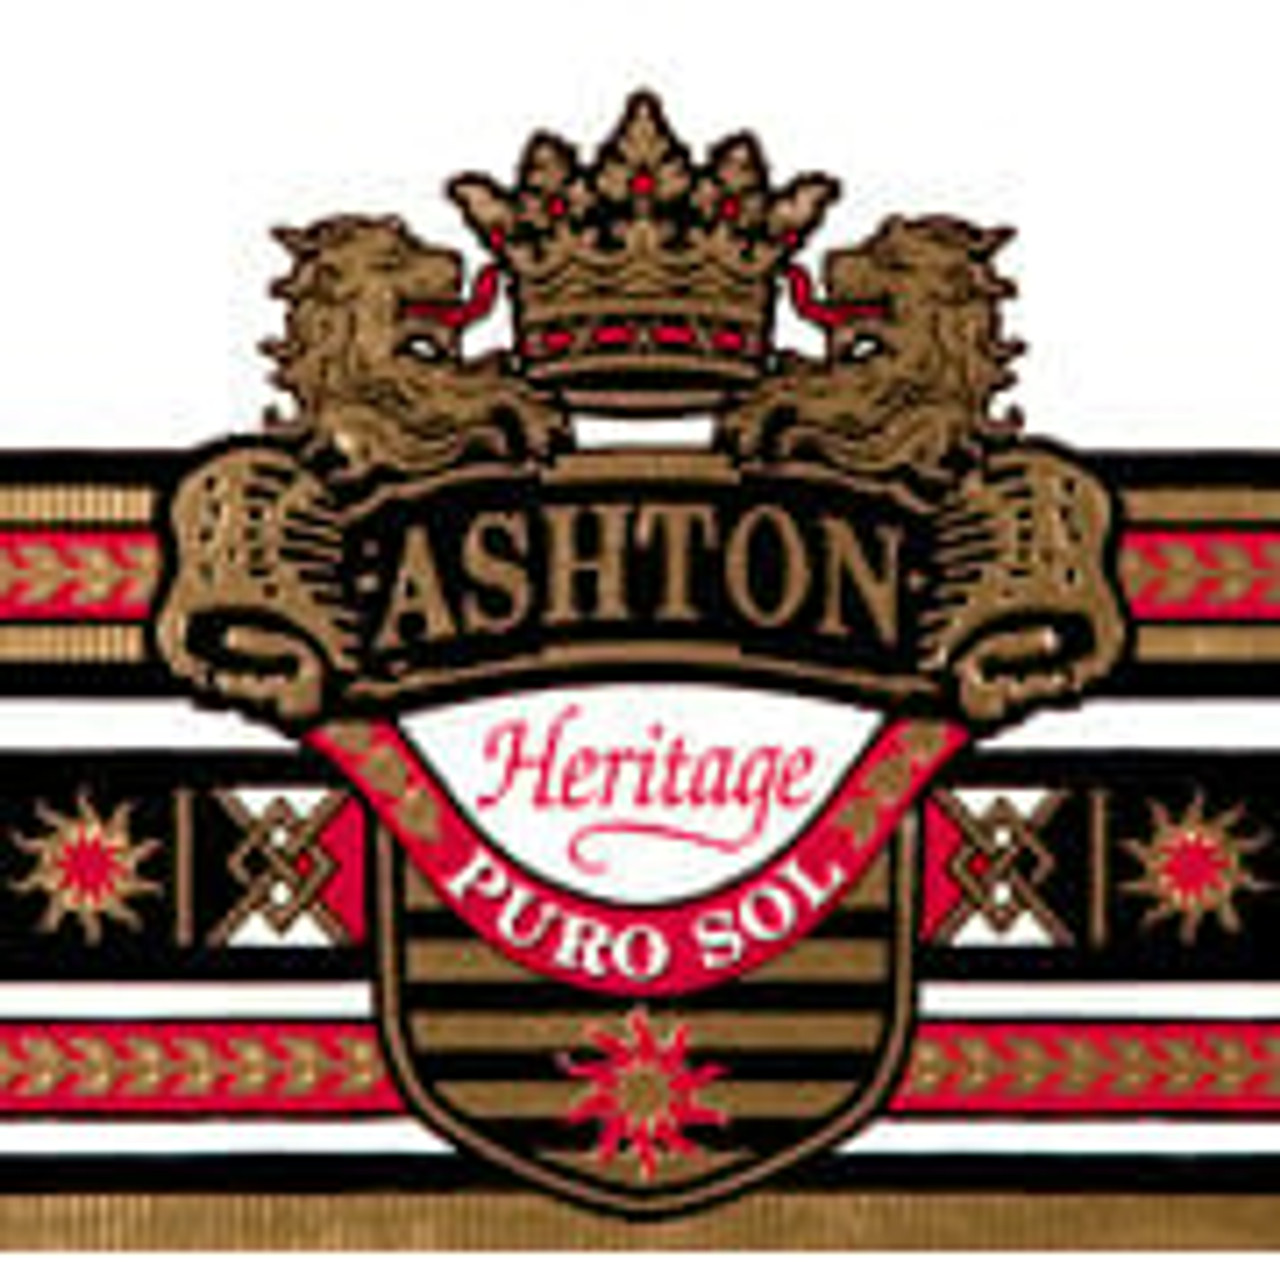 Ashton Heritage Puro Sol Logo